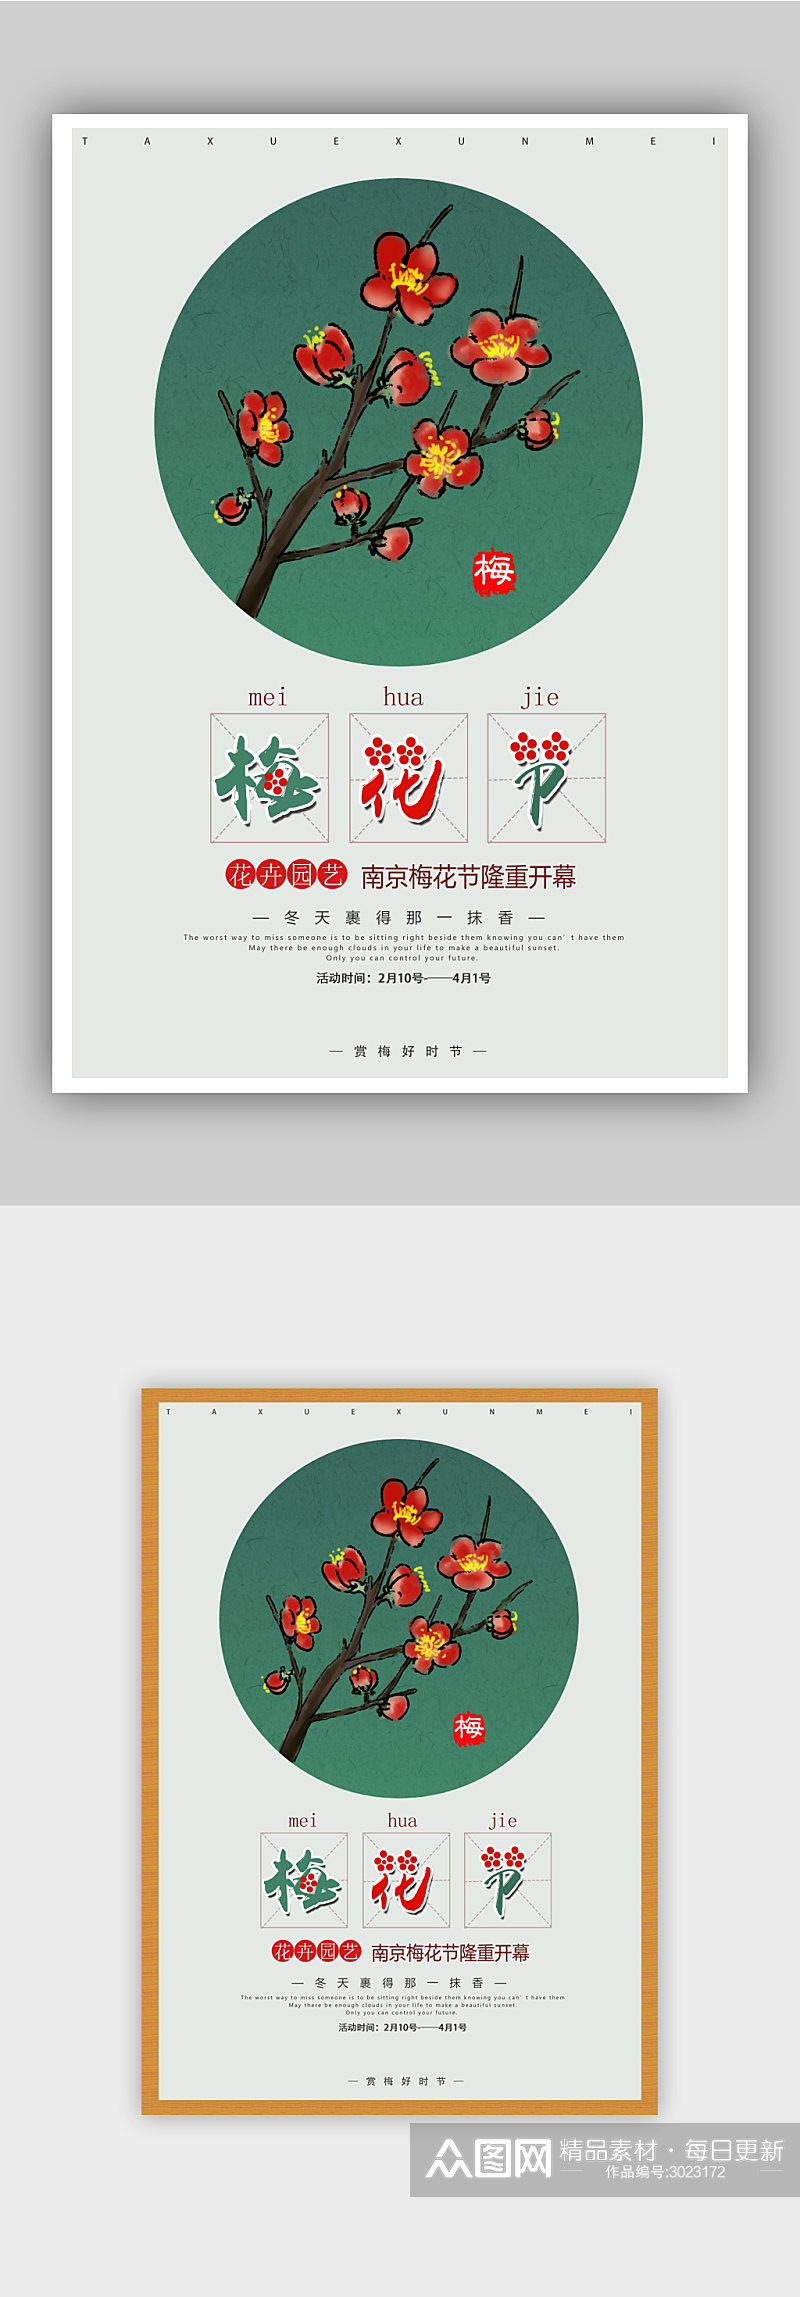 手绘红梅梅花节海报素材